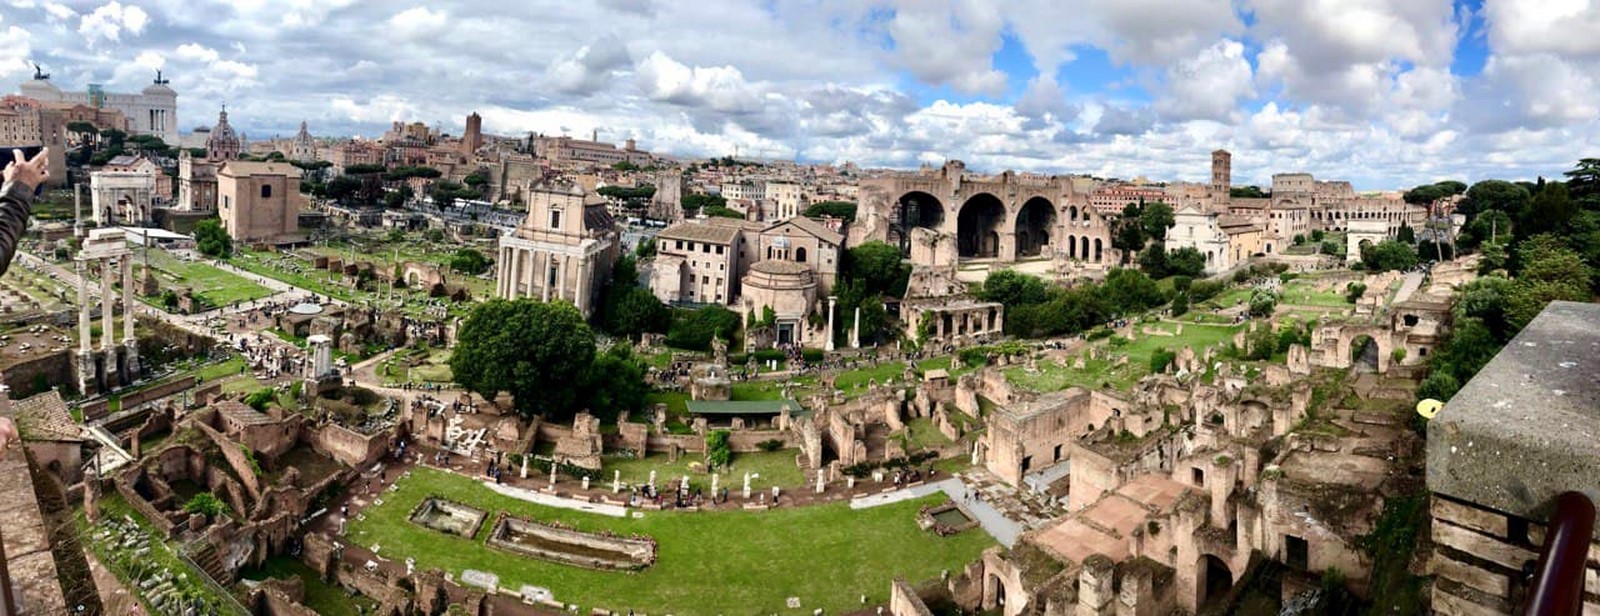 罗马建筑创新如何影响今天的城市规划- Sheet2